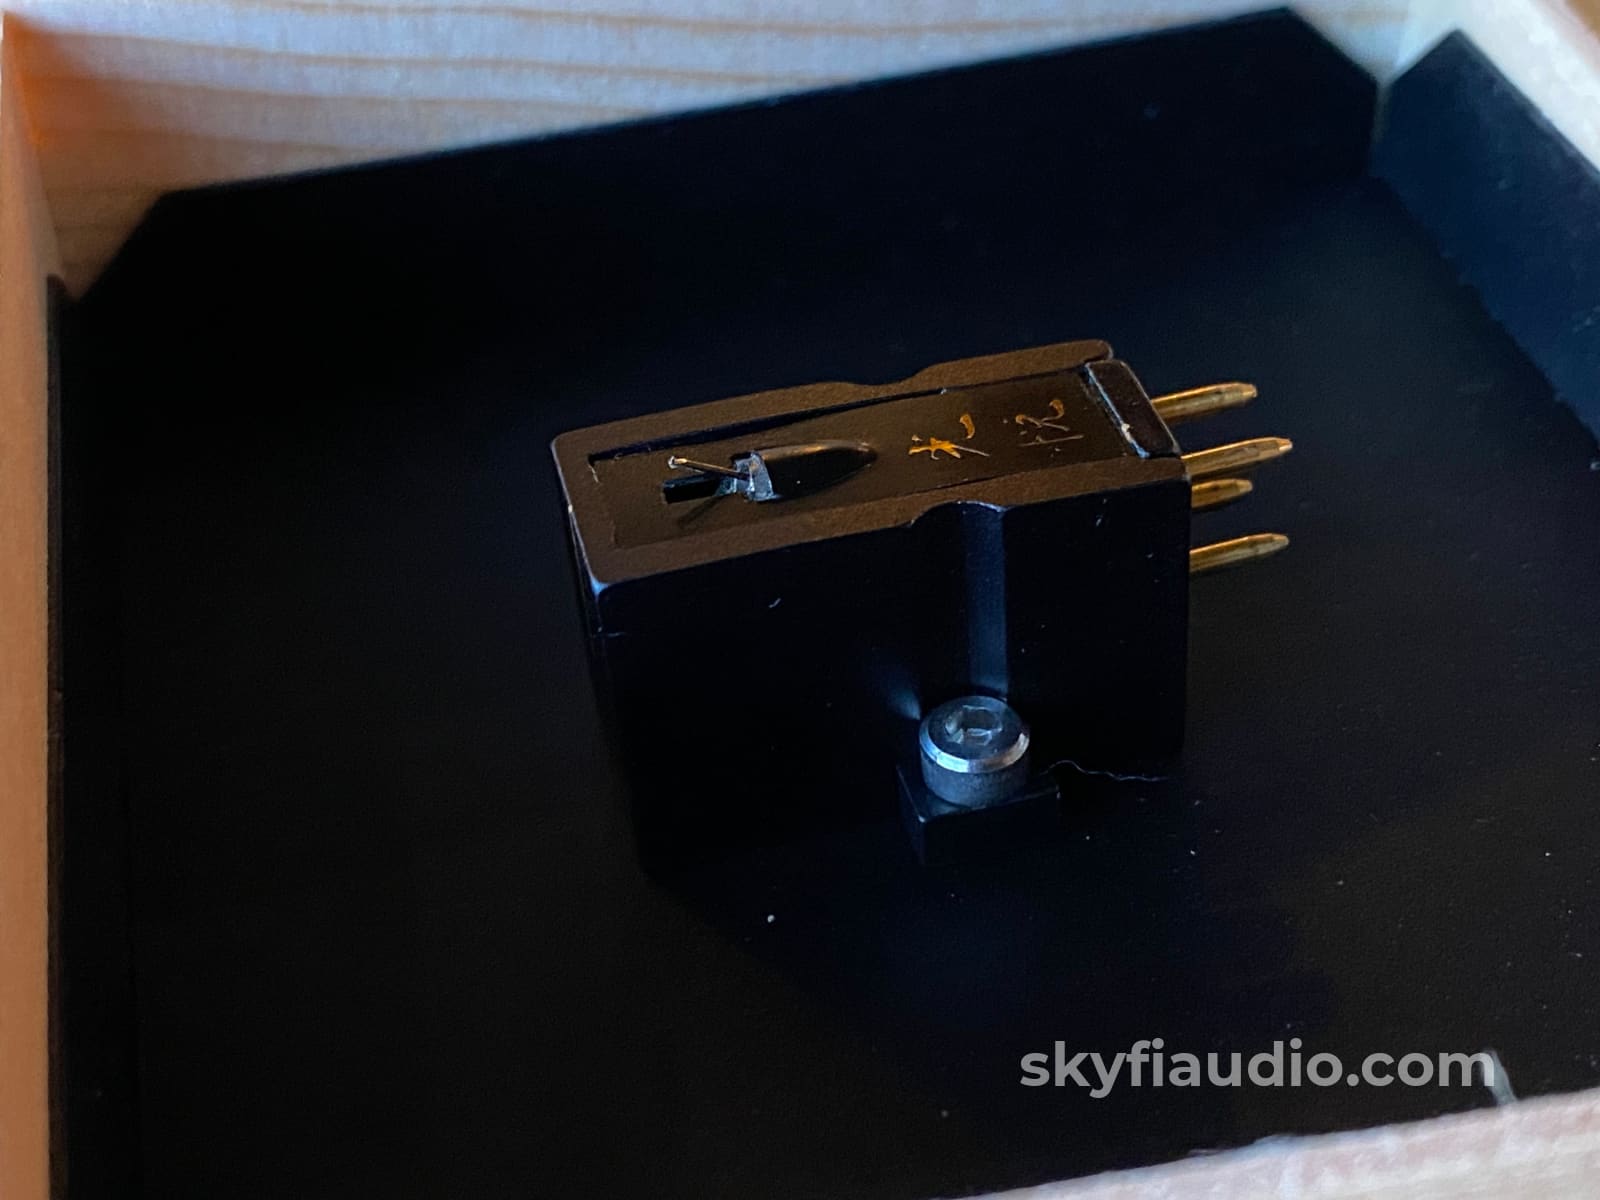 Koetsu Black Mc Phono Cartridge - Light Use